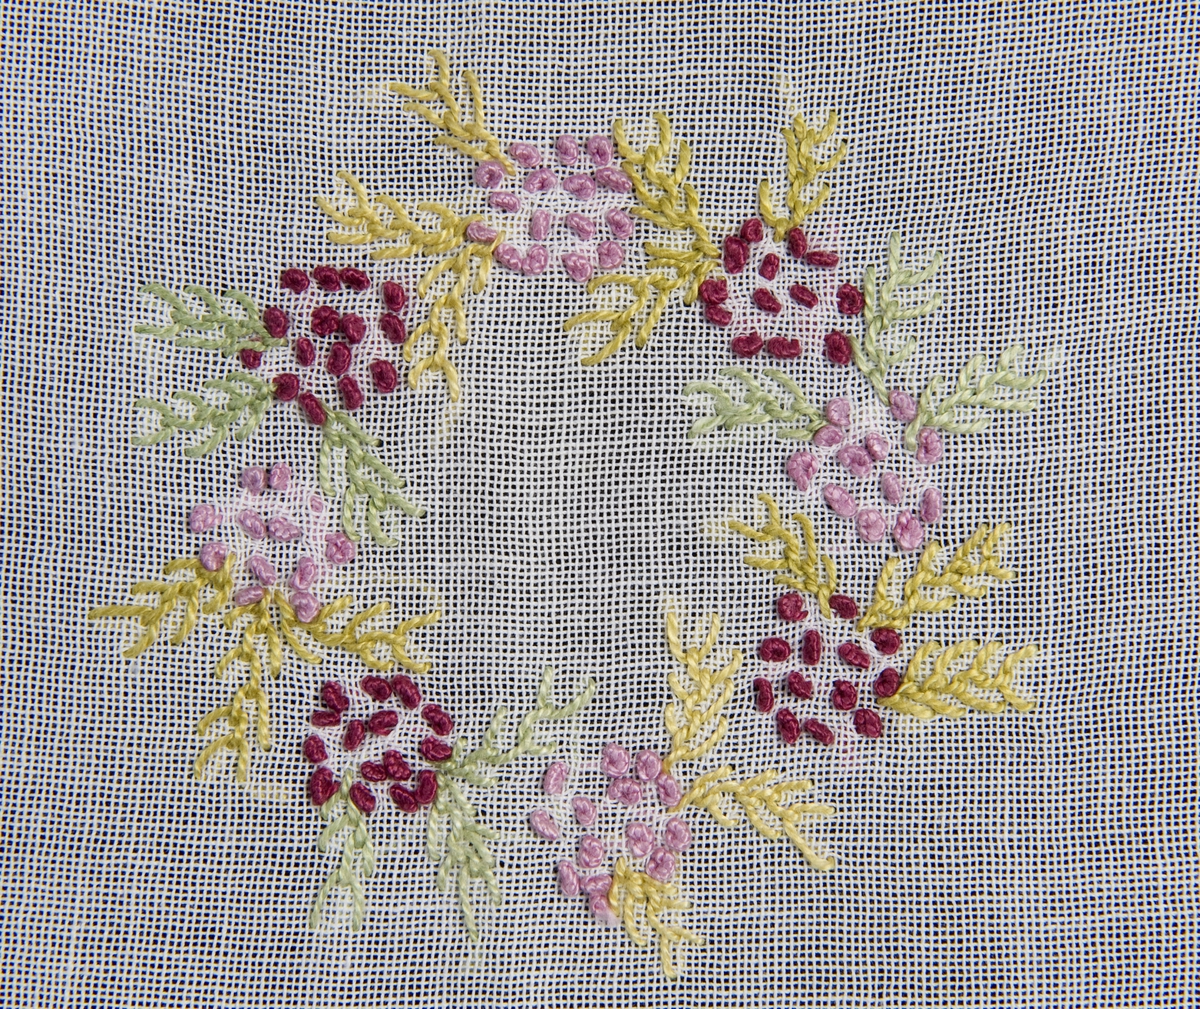 Opprinnelig hvit (skittenhvit) - lin? Blomsterbroderi i gulnyanser, rosa, blårødt og lysegrønt